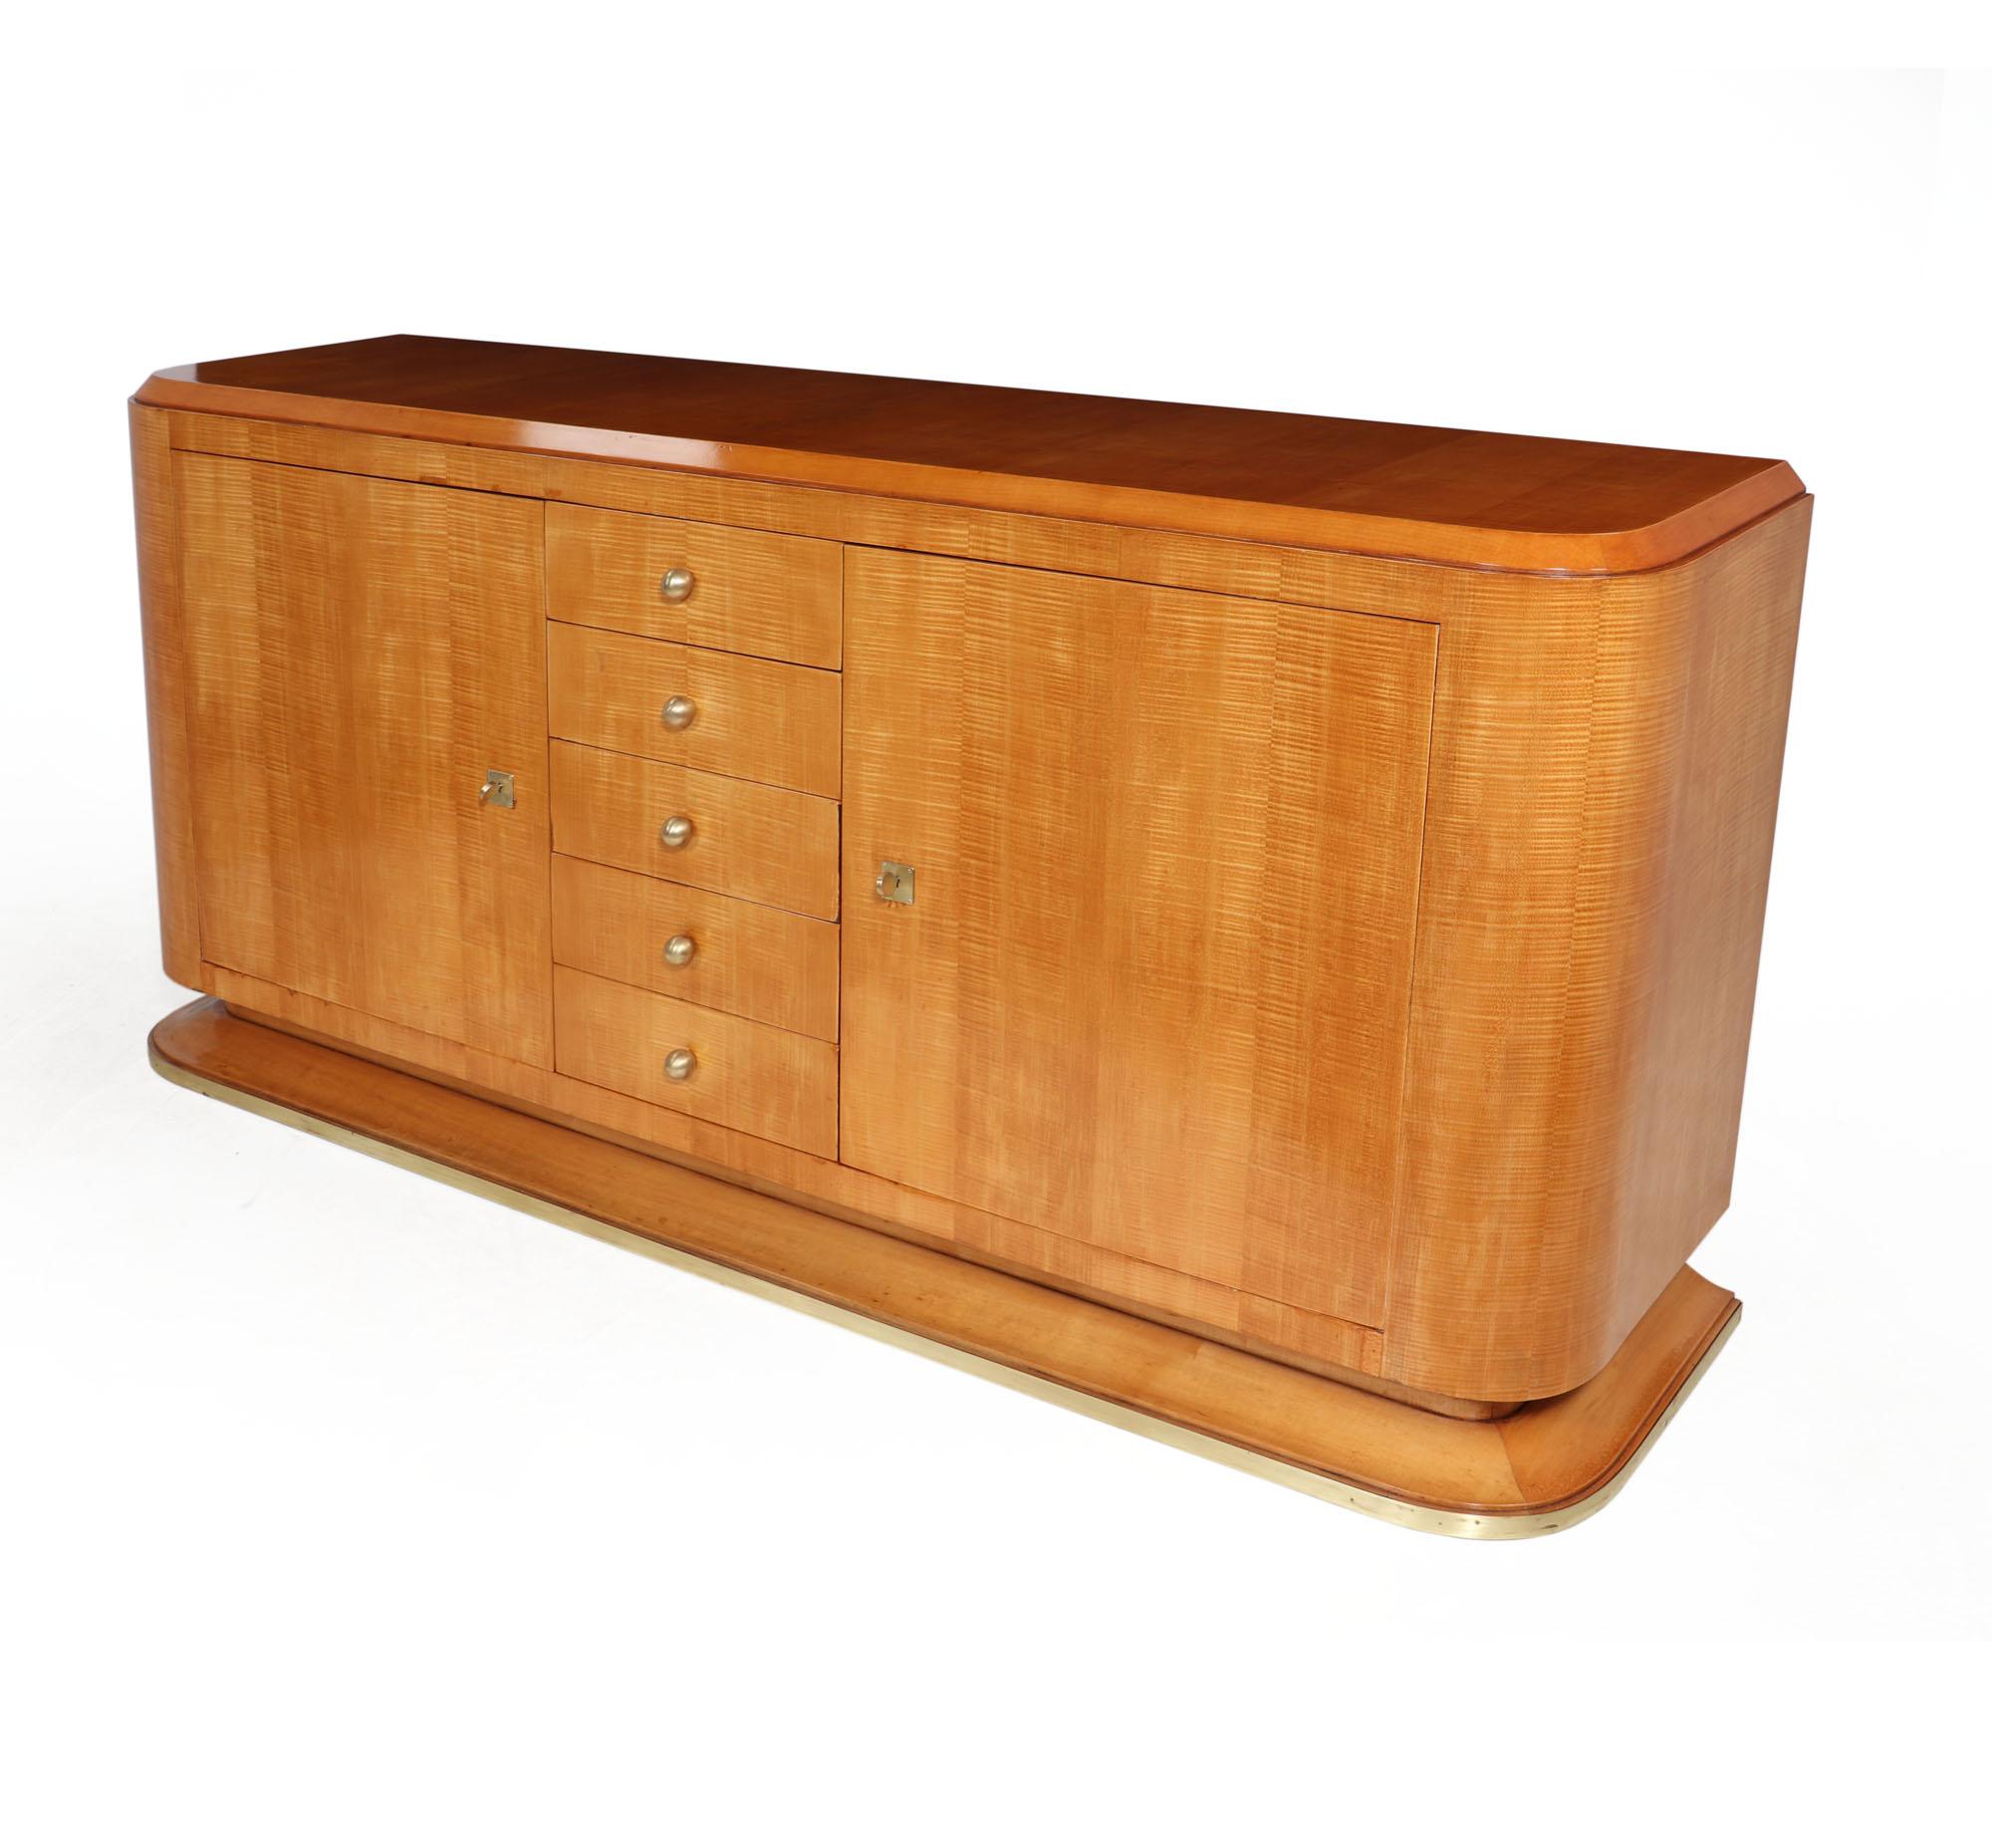 Dieses französische Art-Déco-Sideboard aus Sycamore-Holz ist ein wunderschönes Möbelstück, das sowohl Stil als auch Stauraum bietet. Dieses atemberaubende Stück verfügt über zwei abschließbare Türen mit fünf zentralen Schubladen und verzierten